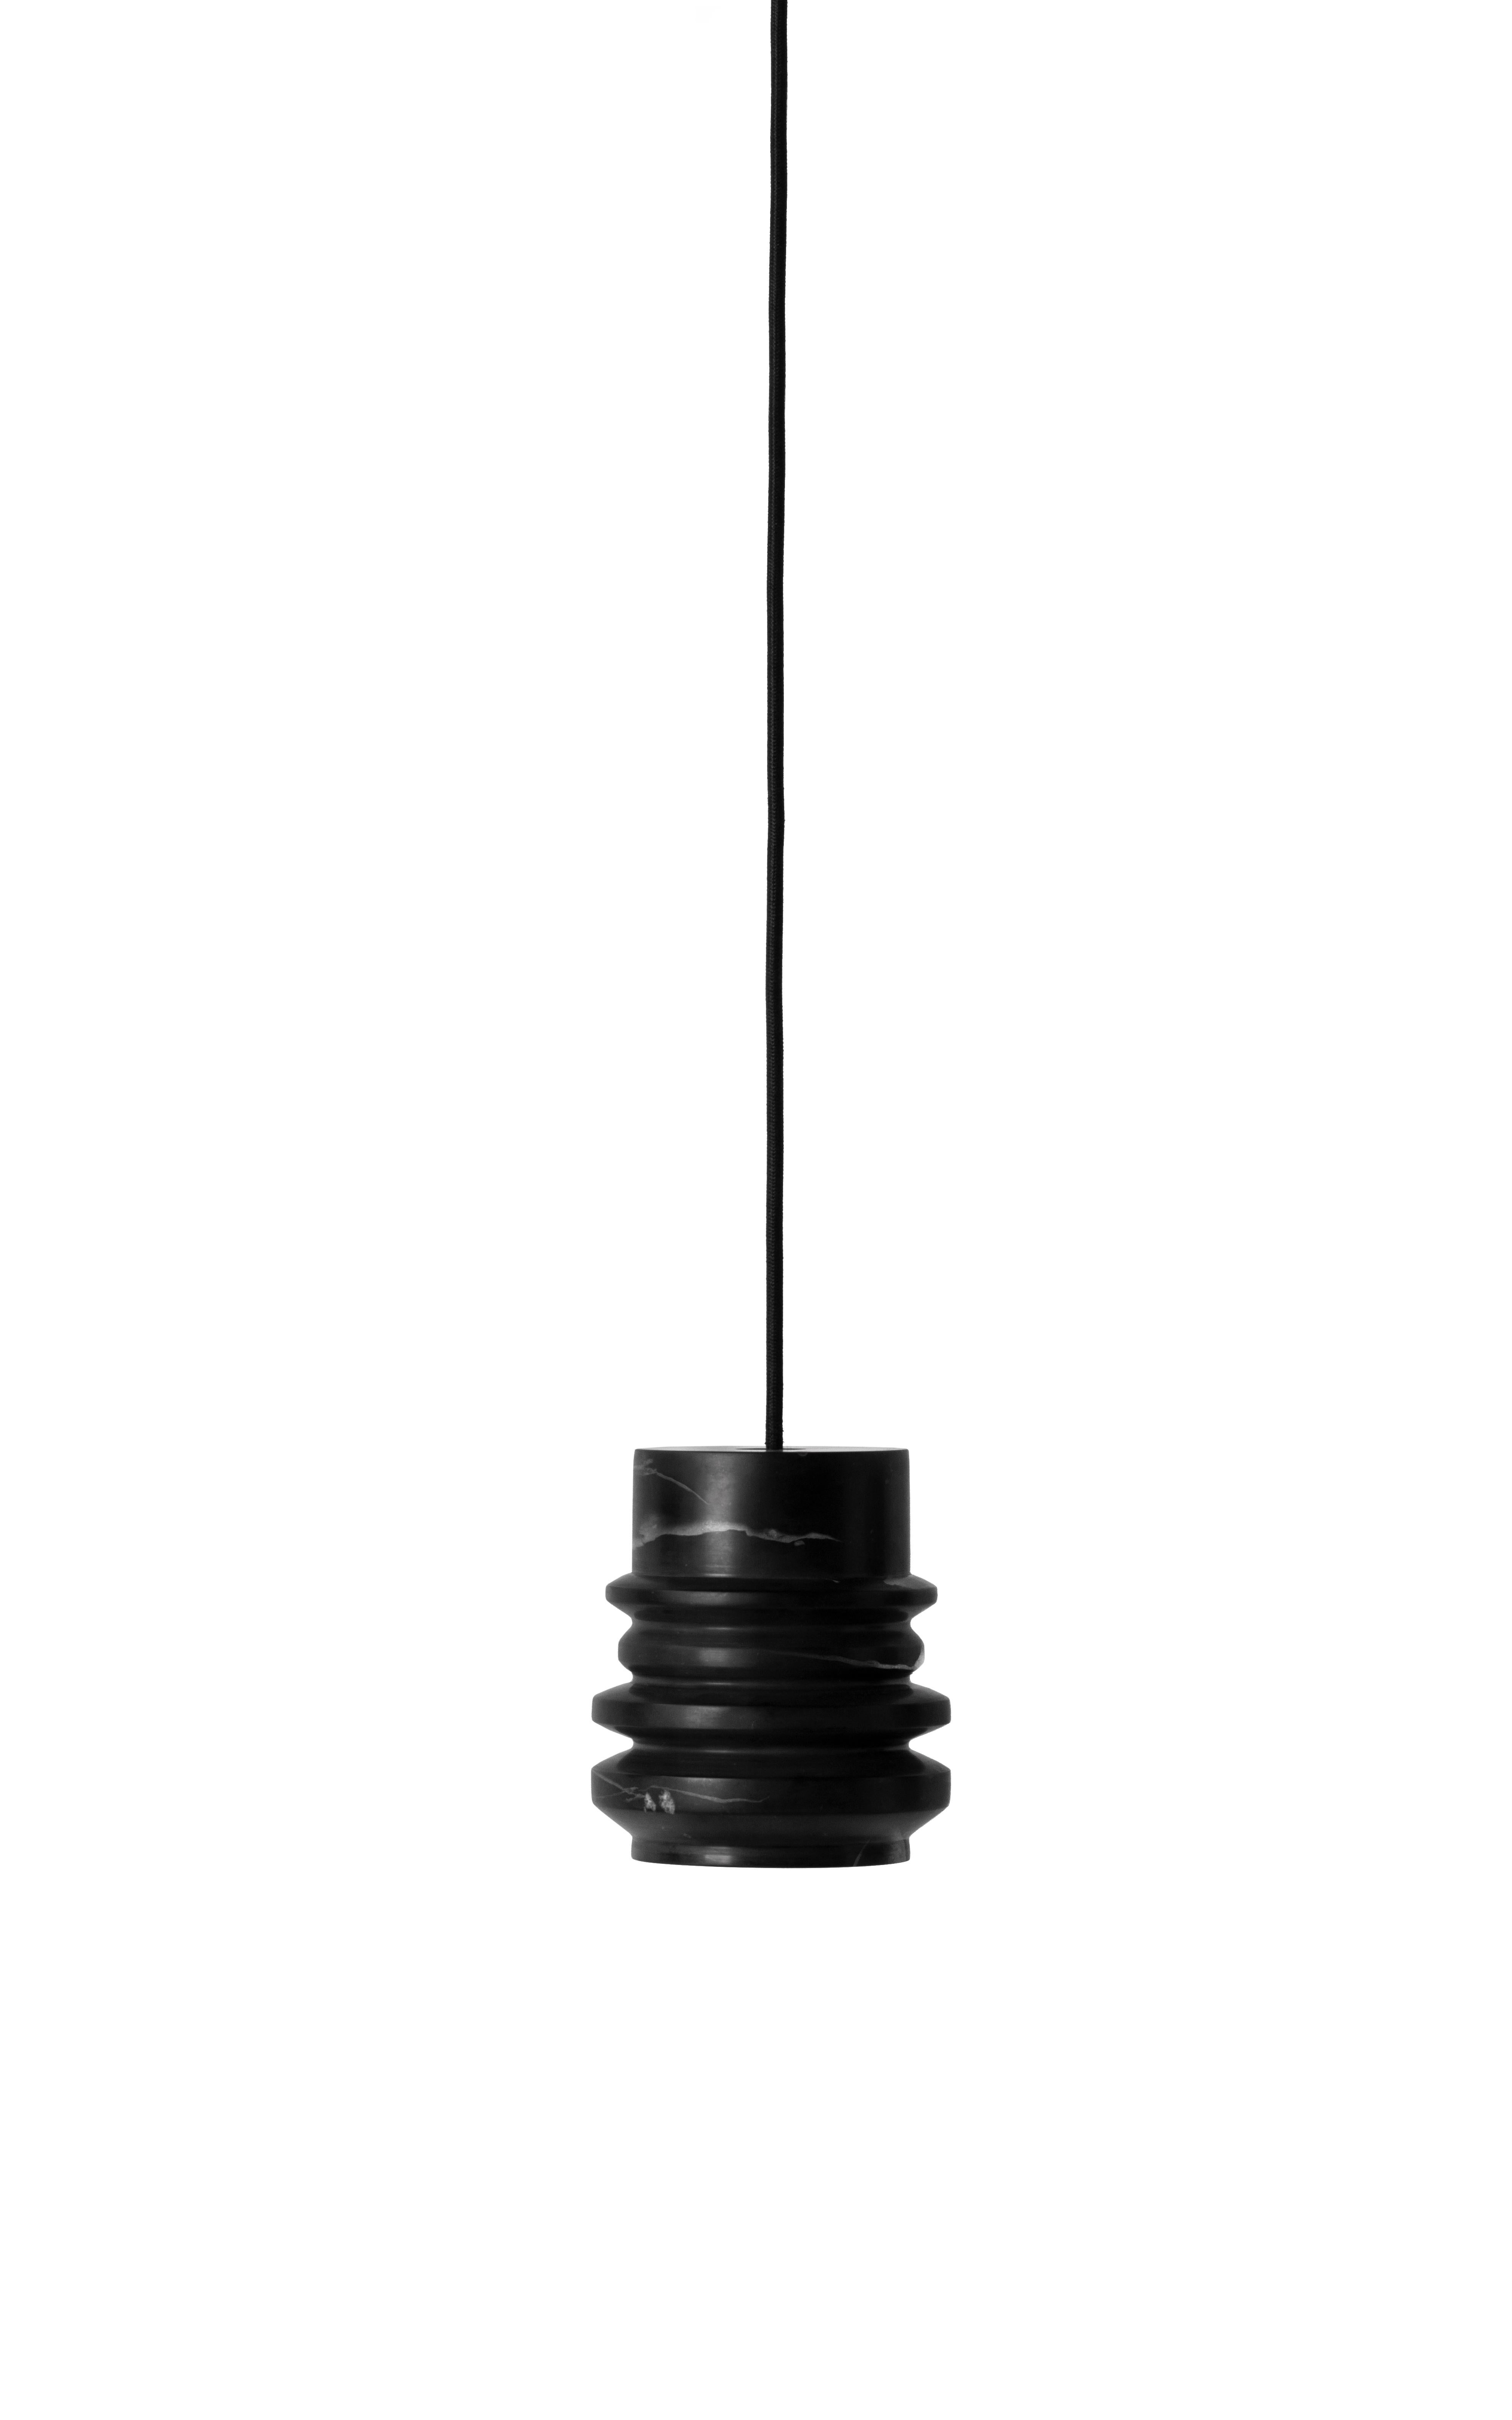 Lampe suspendue 'CIRCLE' de Buzao x Bentu design.
Marbre noir

Mesures : 15 cm de haut, 13 cm de diamètre
Fil : 2 mètres noir (réglable)
Type de lampe : E27 LED 3W 100-240V 80Ra 200LM 2700K - Compatible avec le système électrique américain.
Rosace